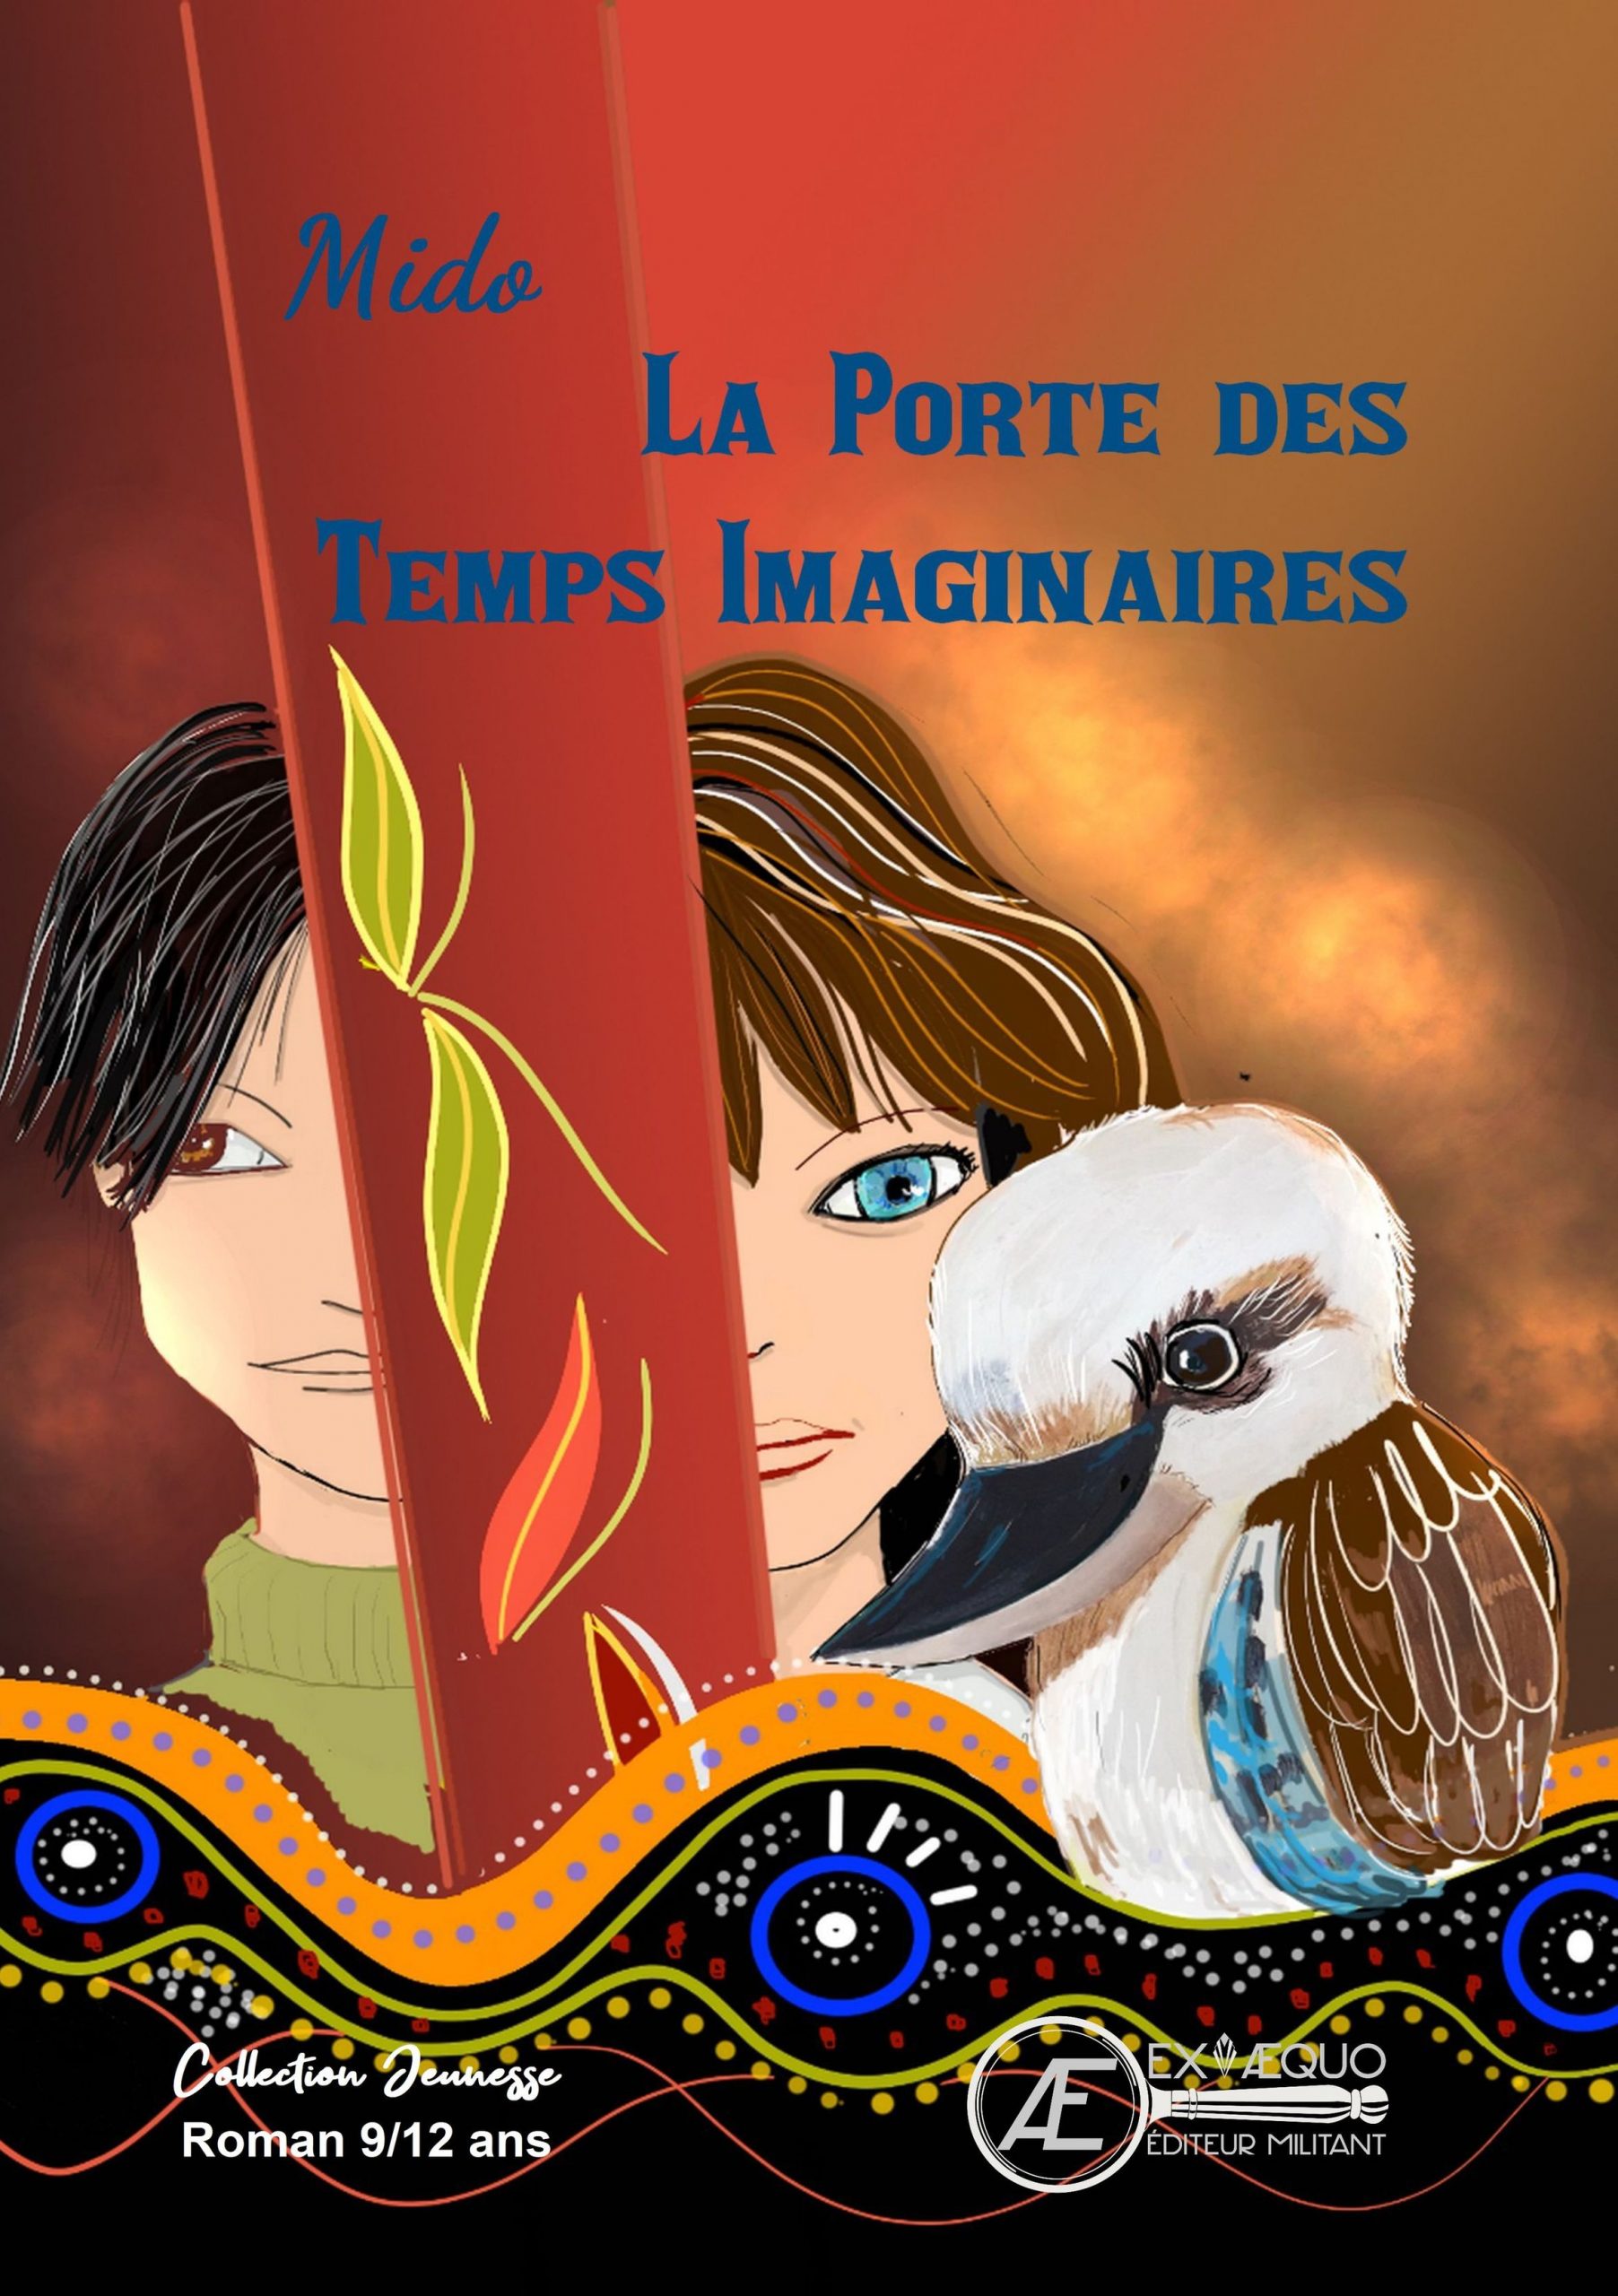 You are currently viewing La porte des temps imaginaires, de MIDO